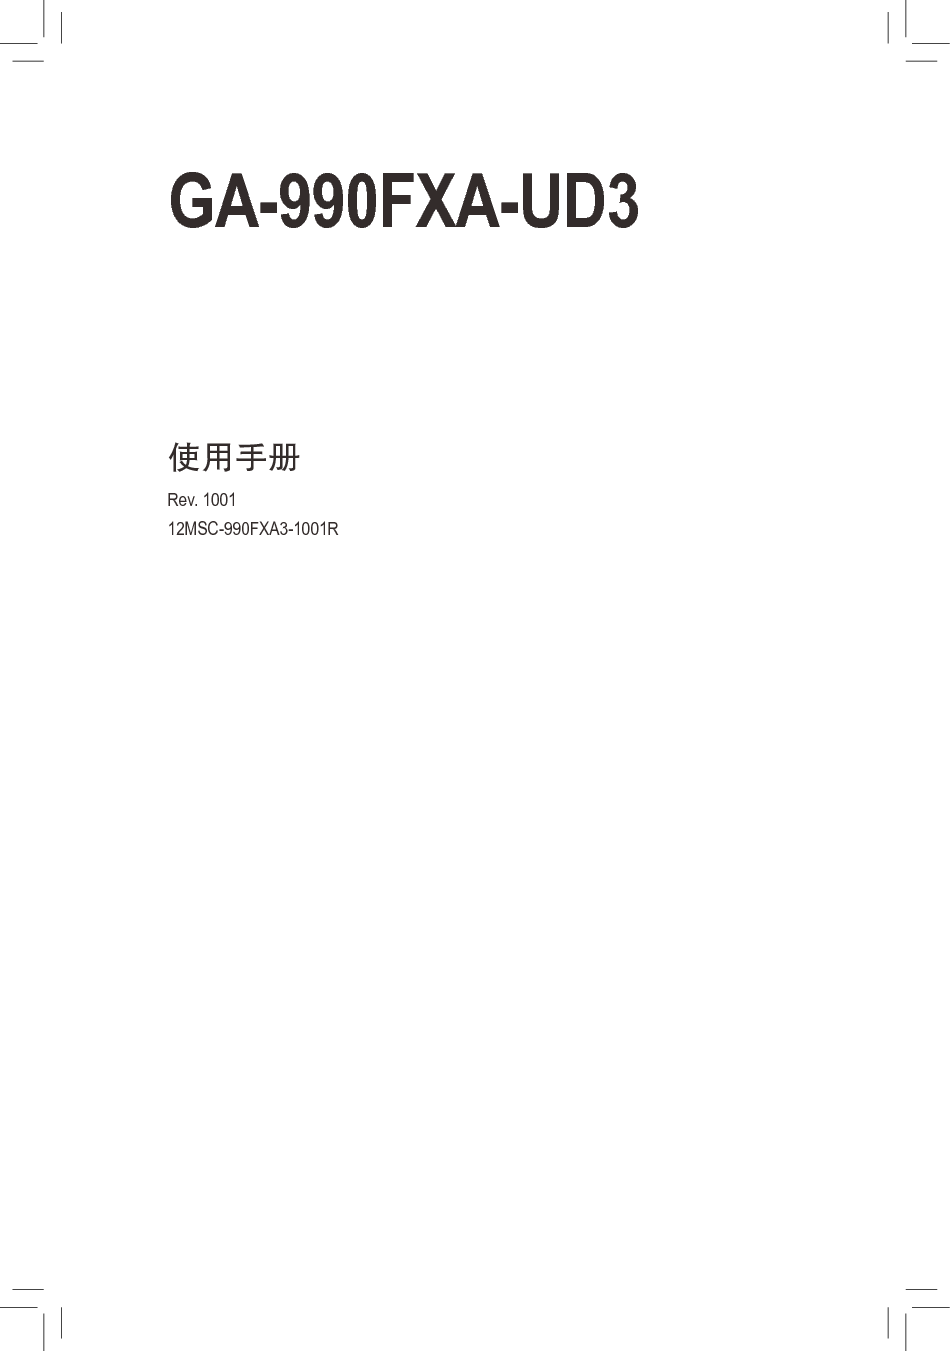 技嘉 Gigabyte GA-990FXA-UD3 1001版 使用手册 封面